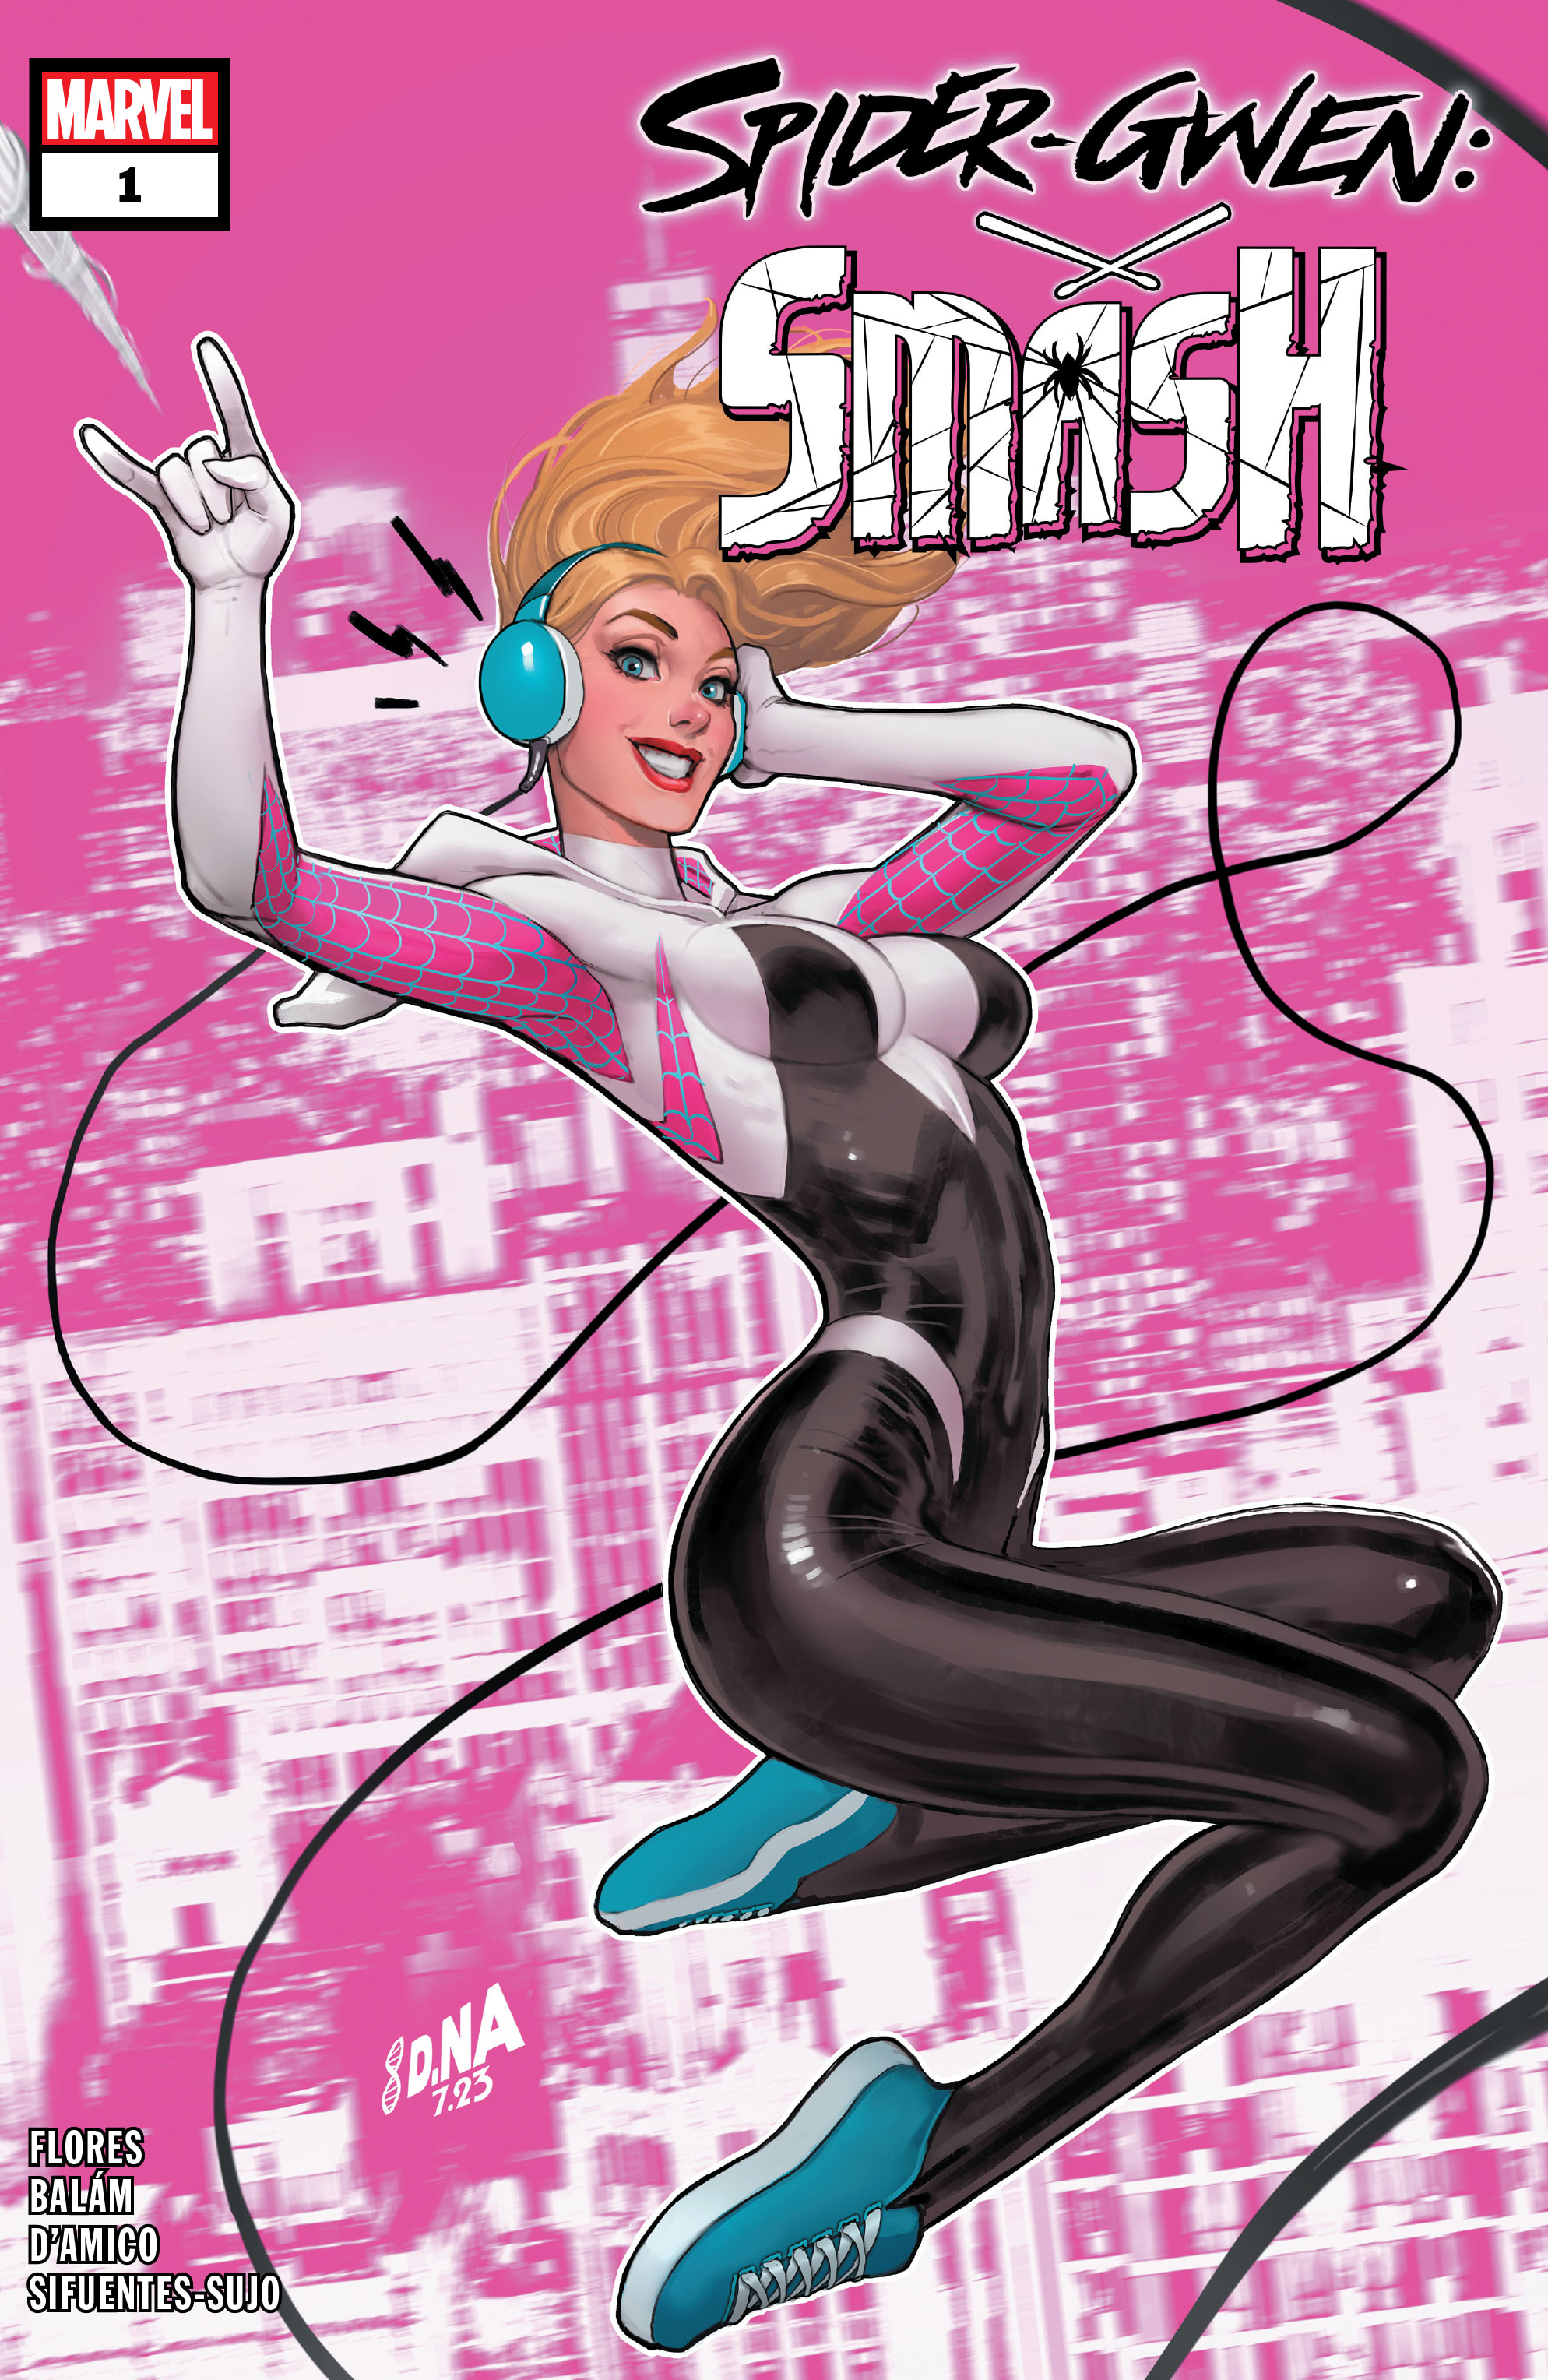 Read online Spider-Gwen: Smash comic -  Issue #1 - 1